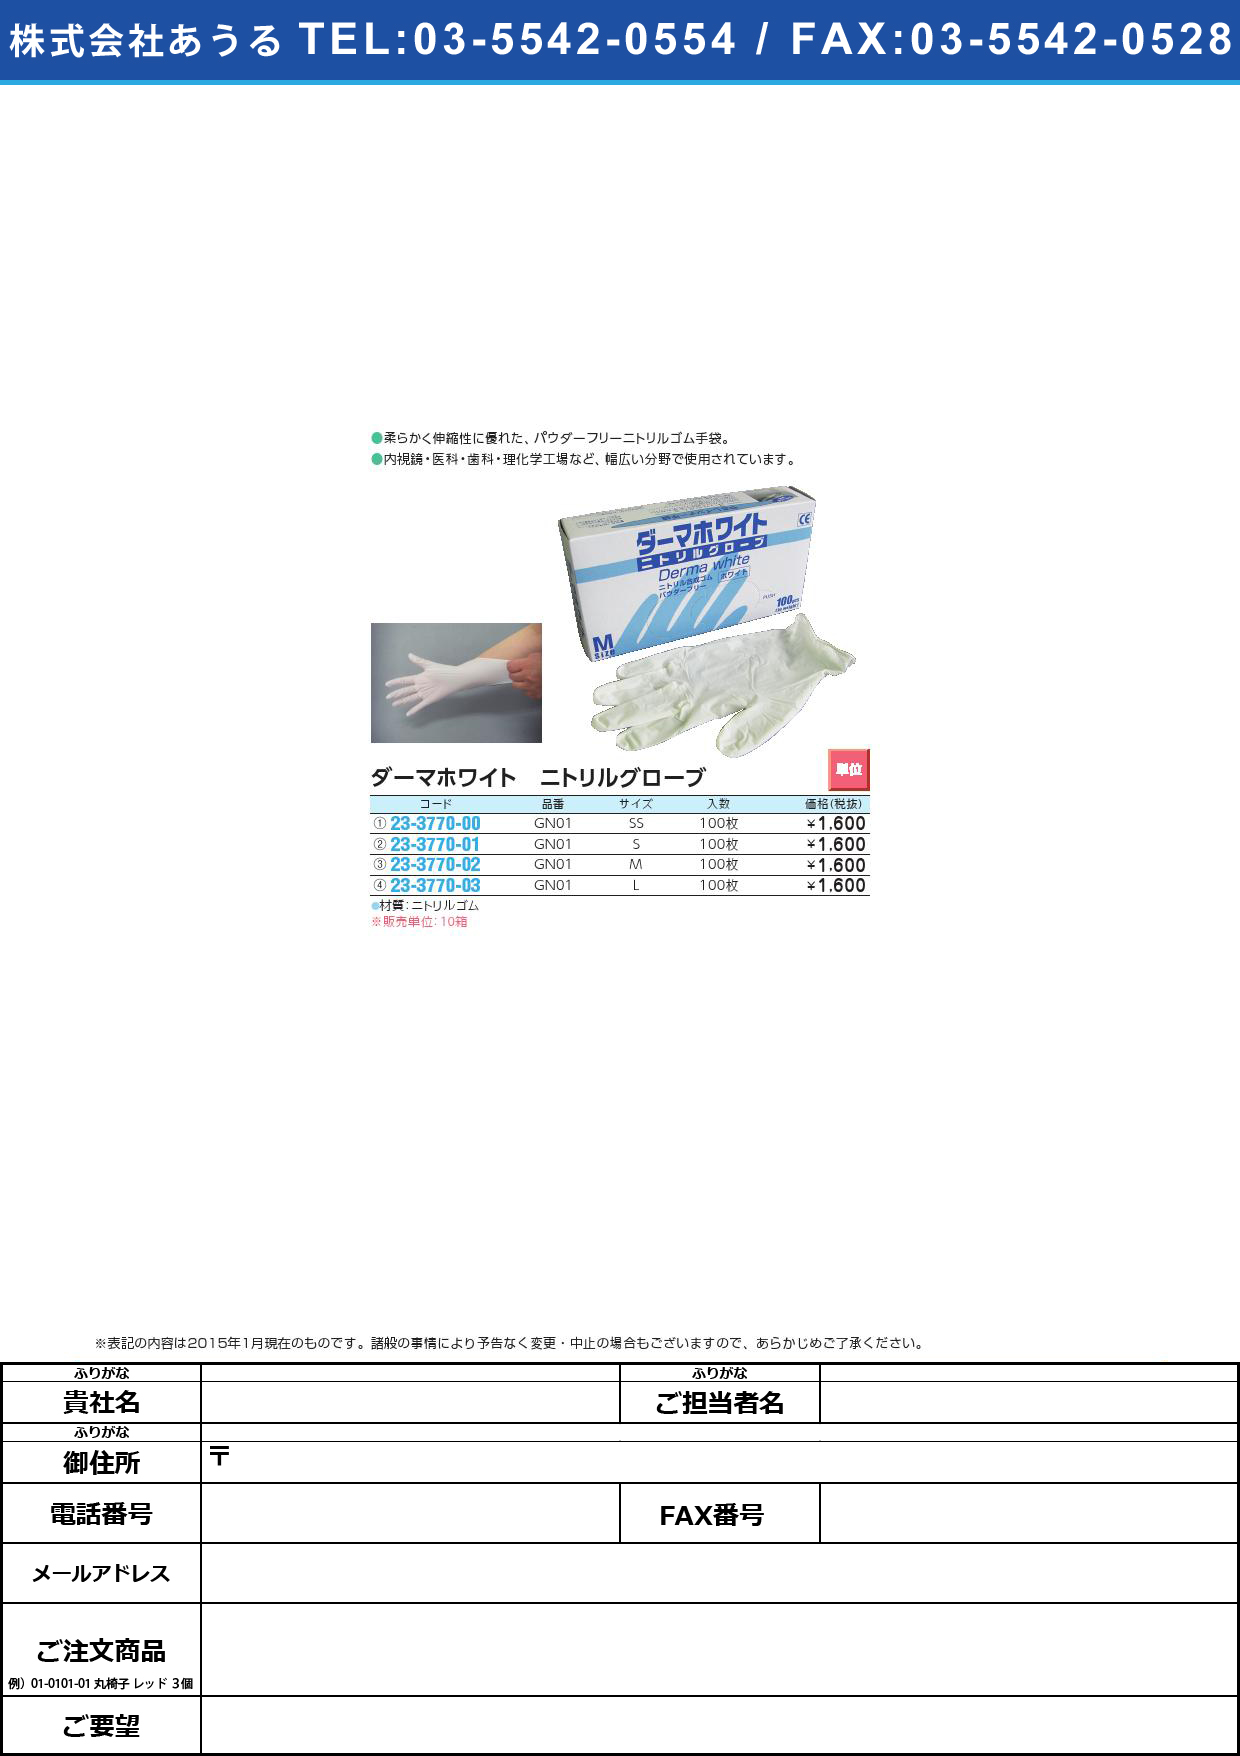 ダーマホワイト ニトリル手袋ＰＦ ﾀﾞｰﾏﾎﾜｲﾄﾆﾄﾘﾙﾃﾌﾞｸﾛPF GN01(M)100ﾏｲ【10箱単位】(23-3770-02)